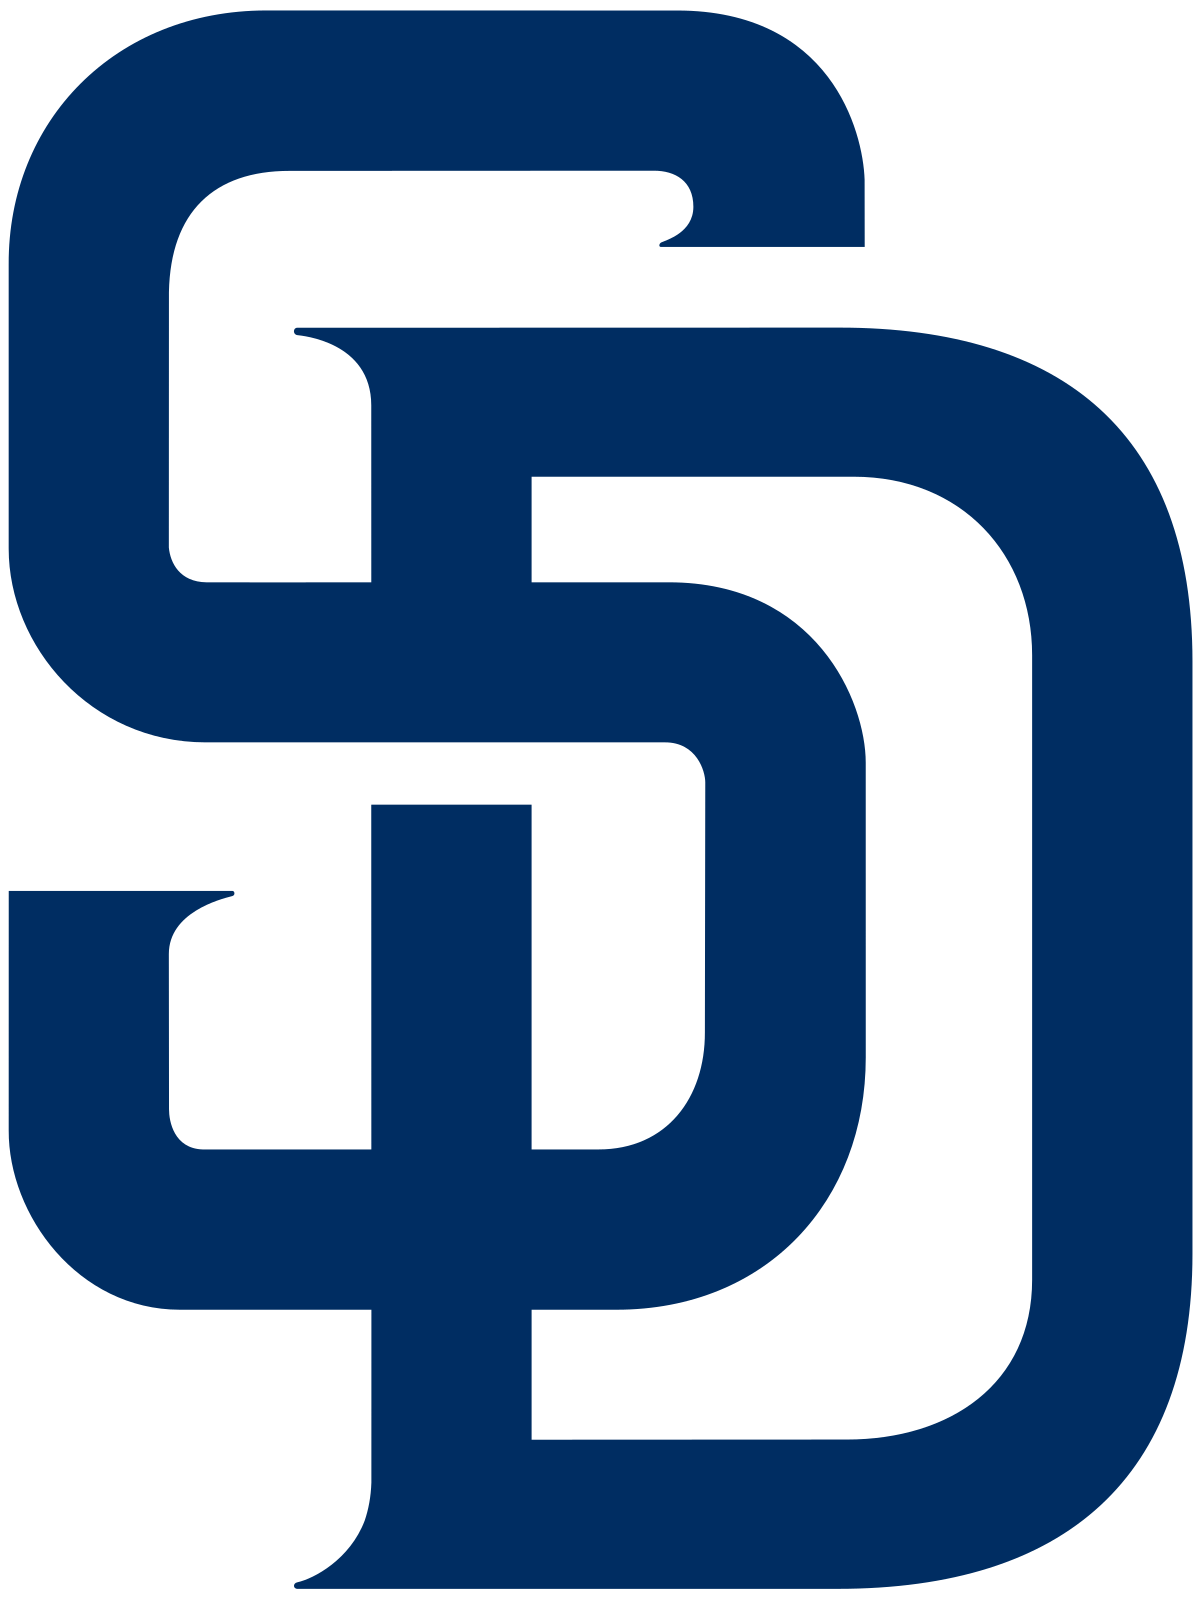 Paders Logo - San Diego Padres